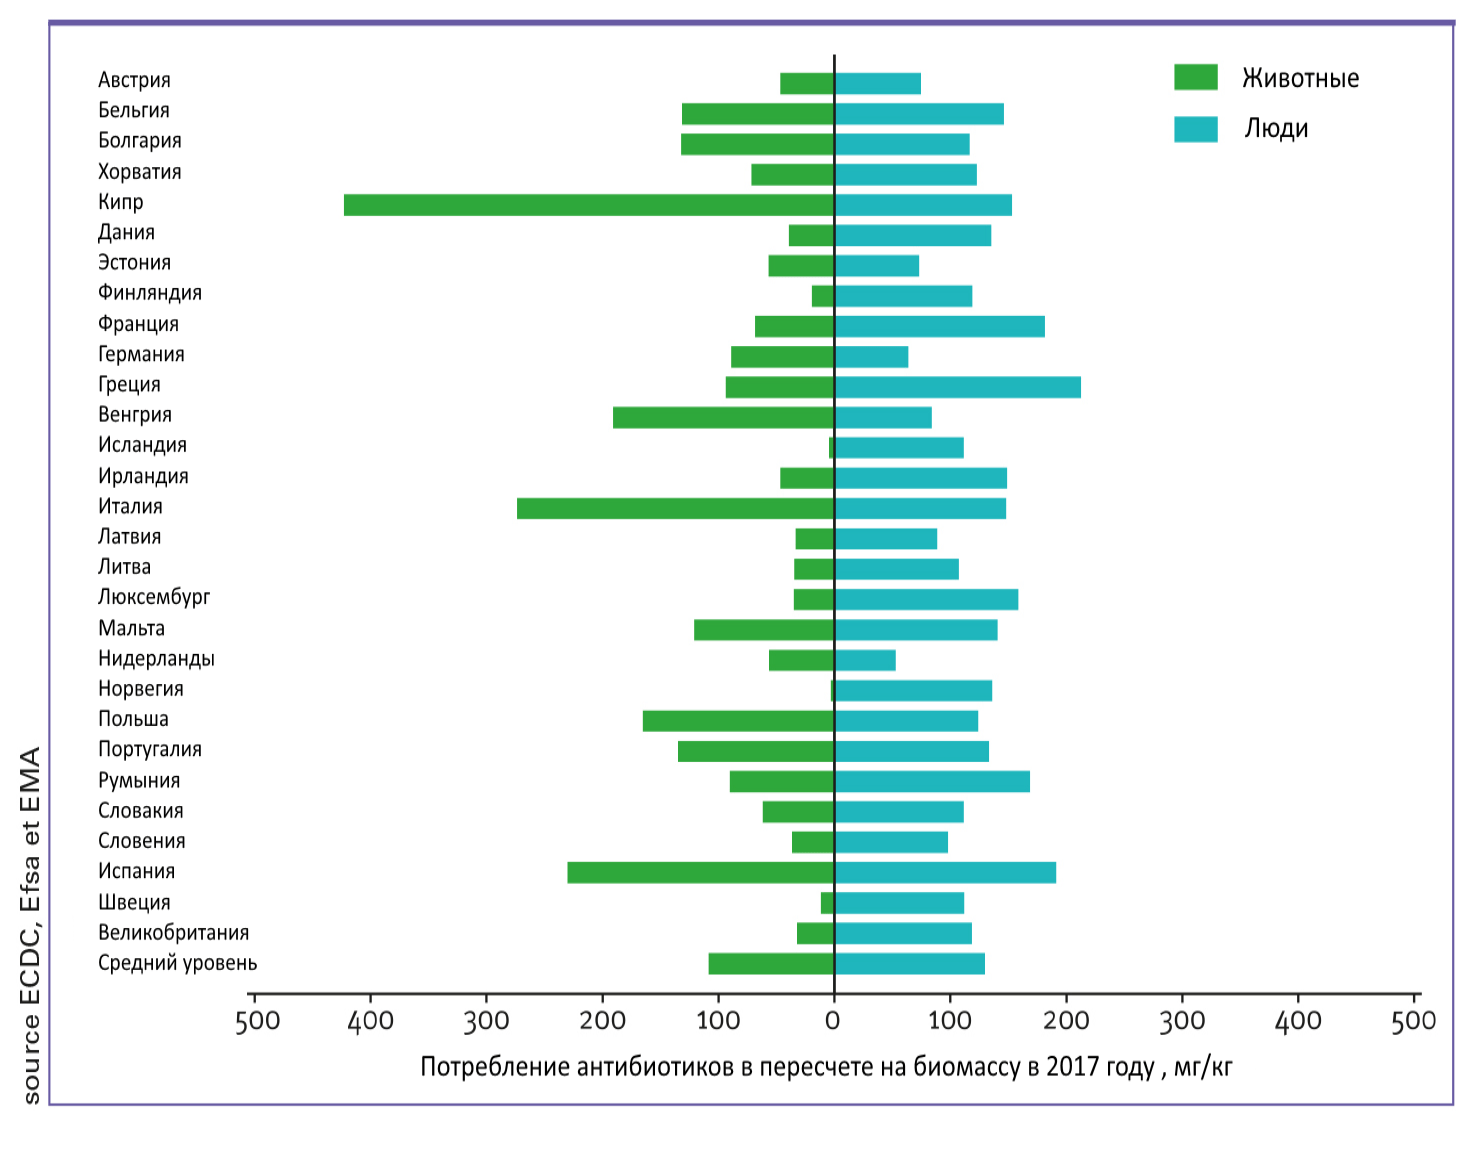 Сравнение потребления антибиотиков в медицине и ветеринарии в разных странах в 2017 г.